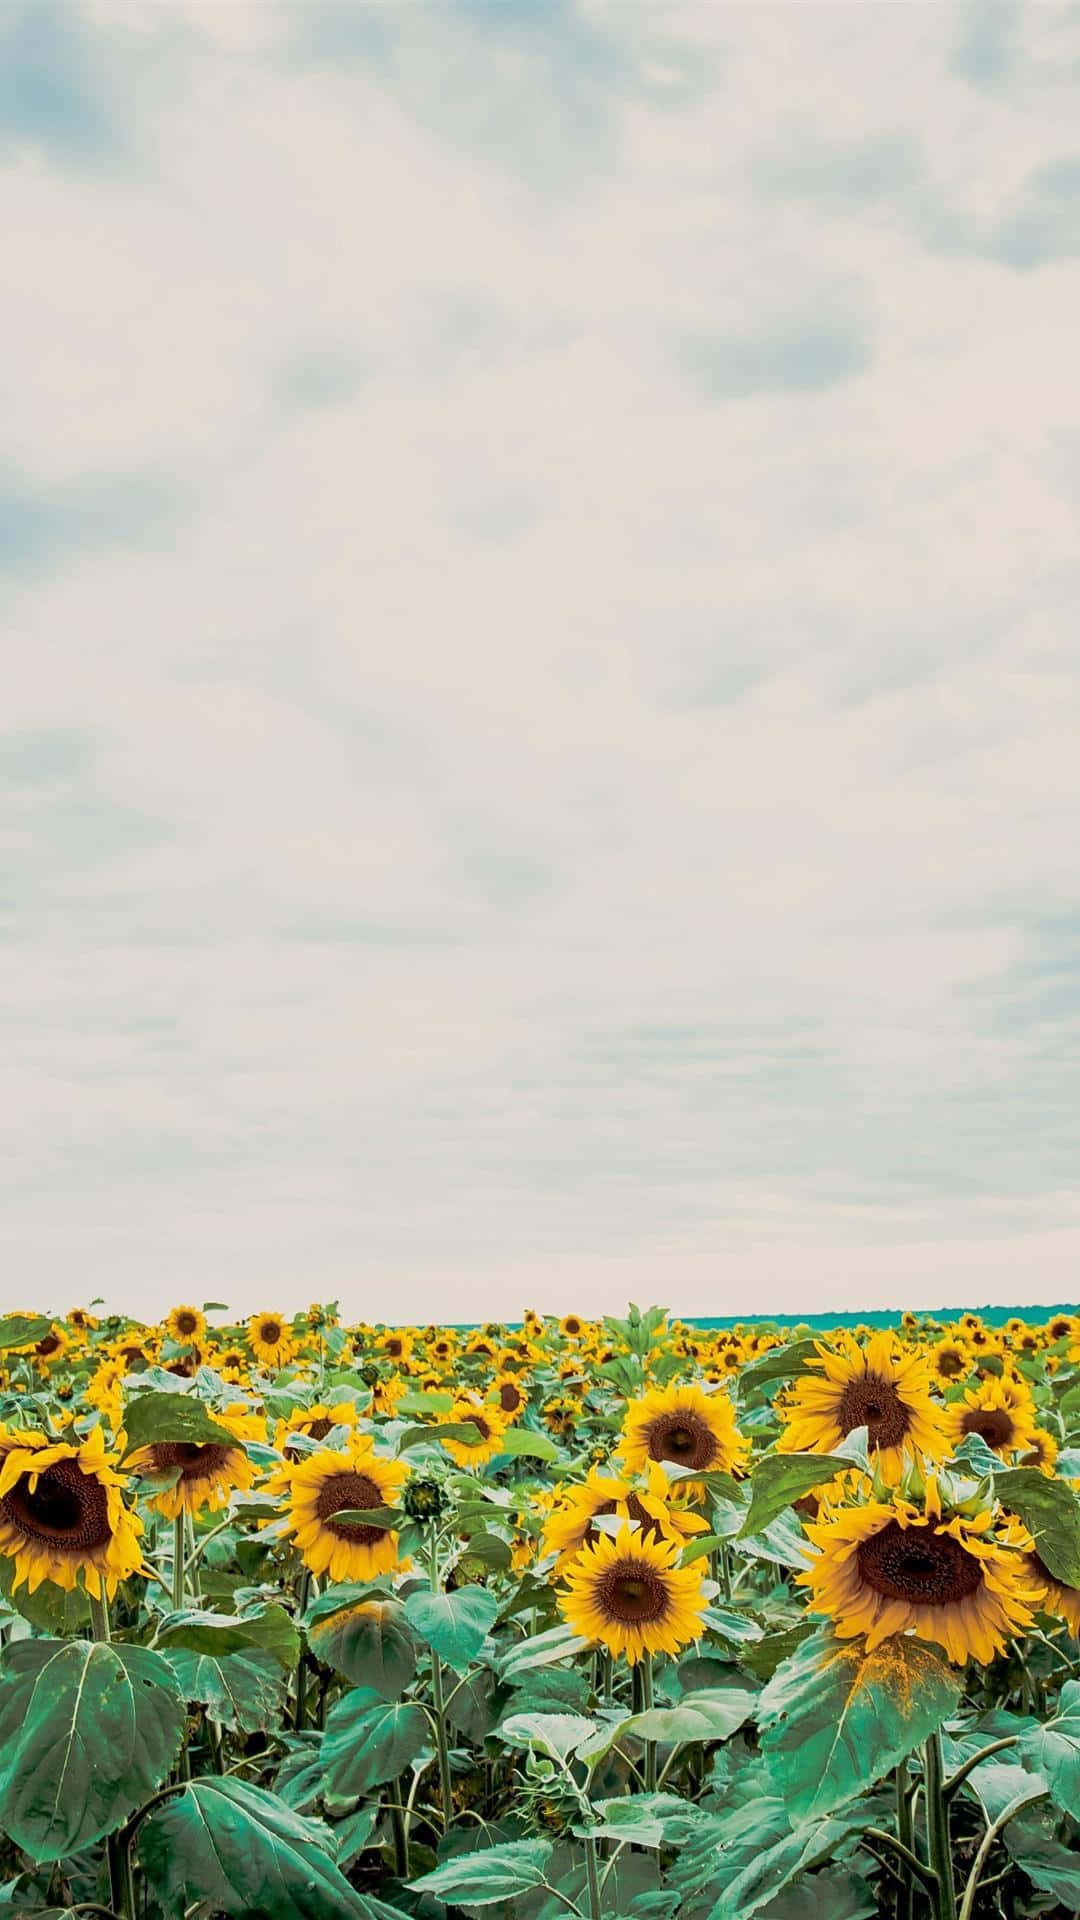 Erhellensie Ihren Tag Mit Diesem Von Der Sonne Inspirierten Sonnenblumen-ästhetik-iphone-hintergrundbild. Wallpaper